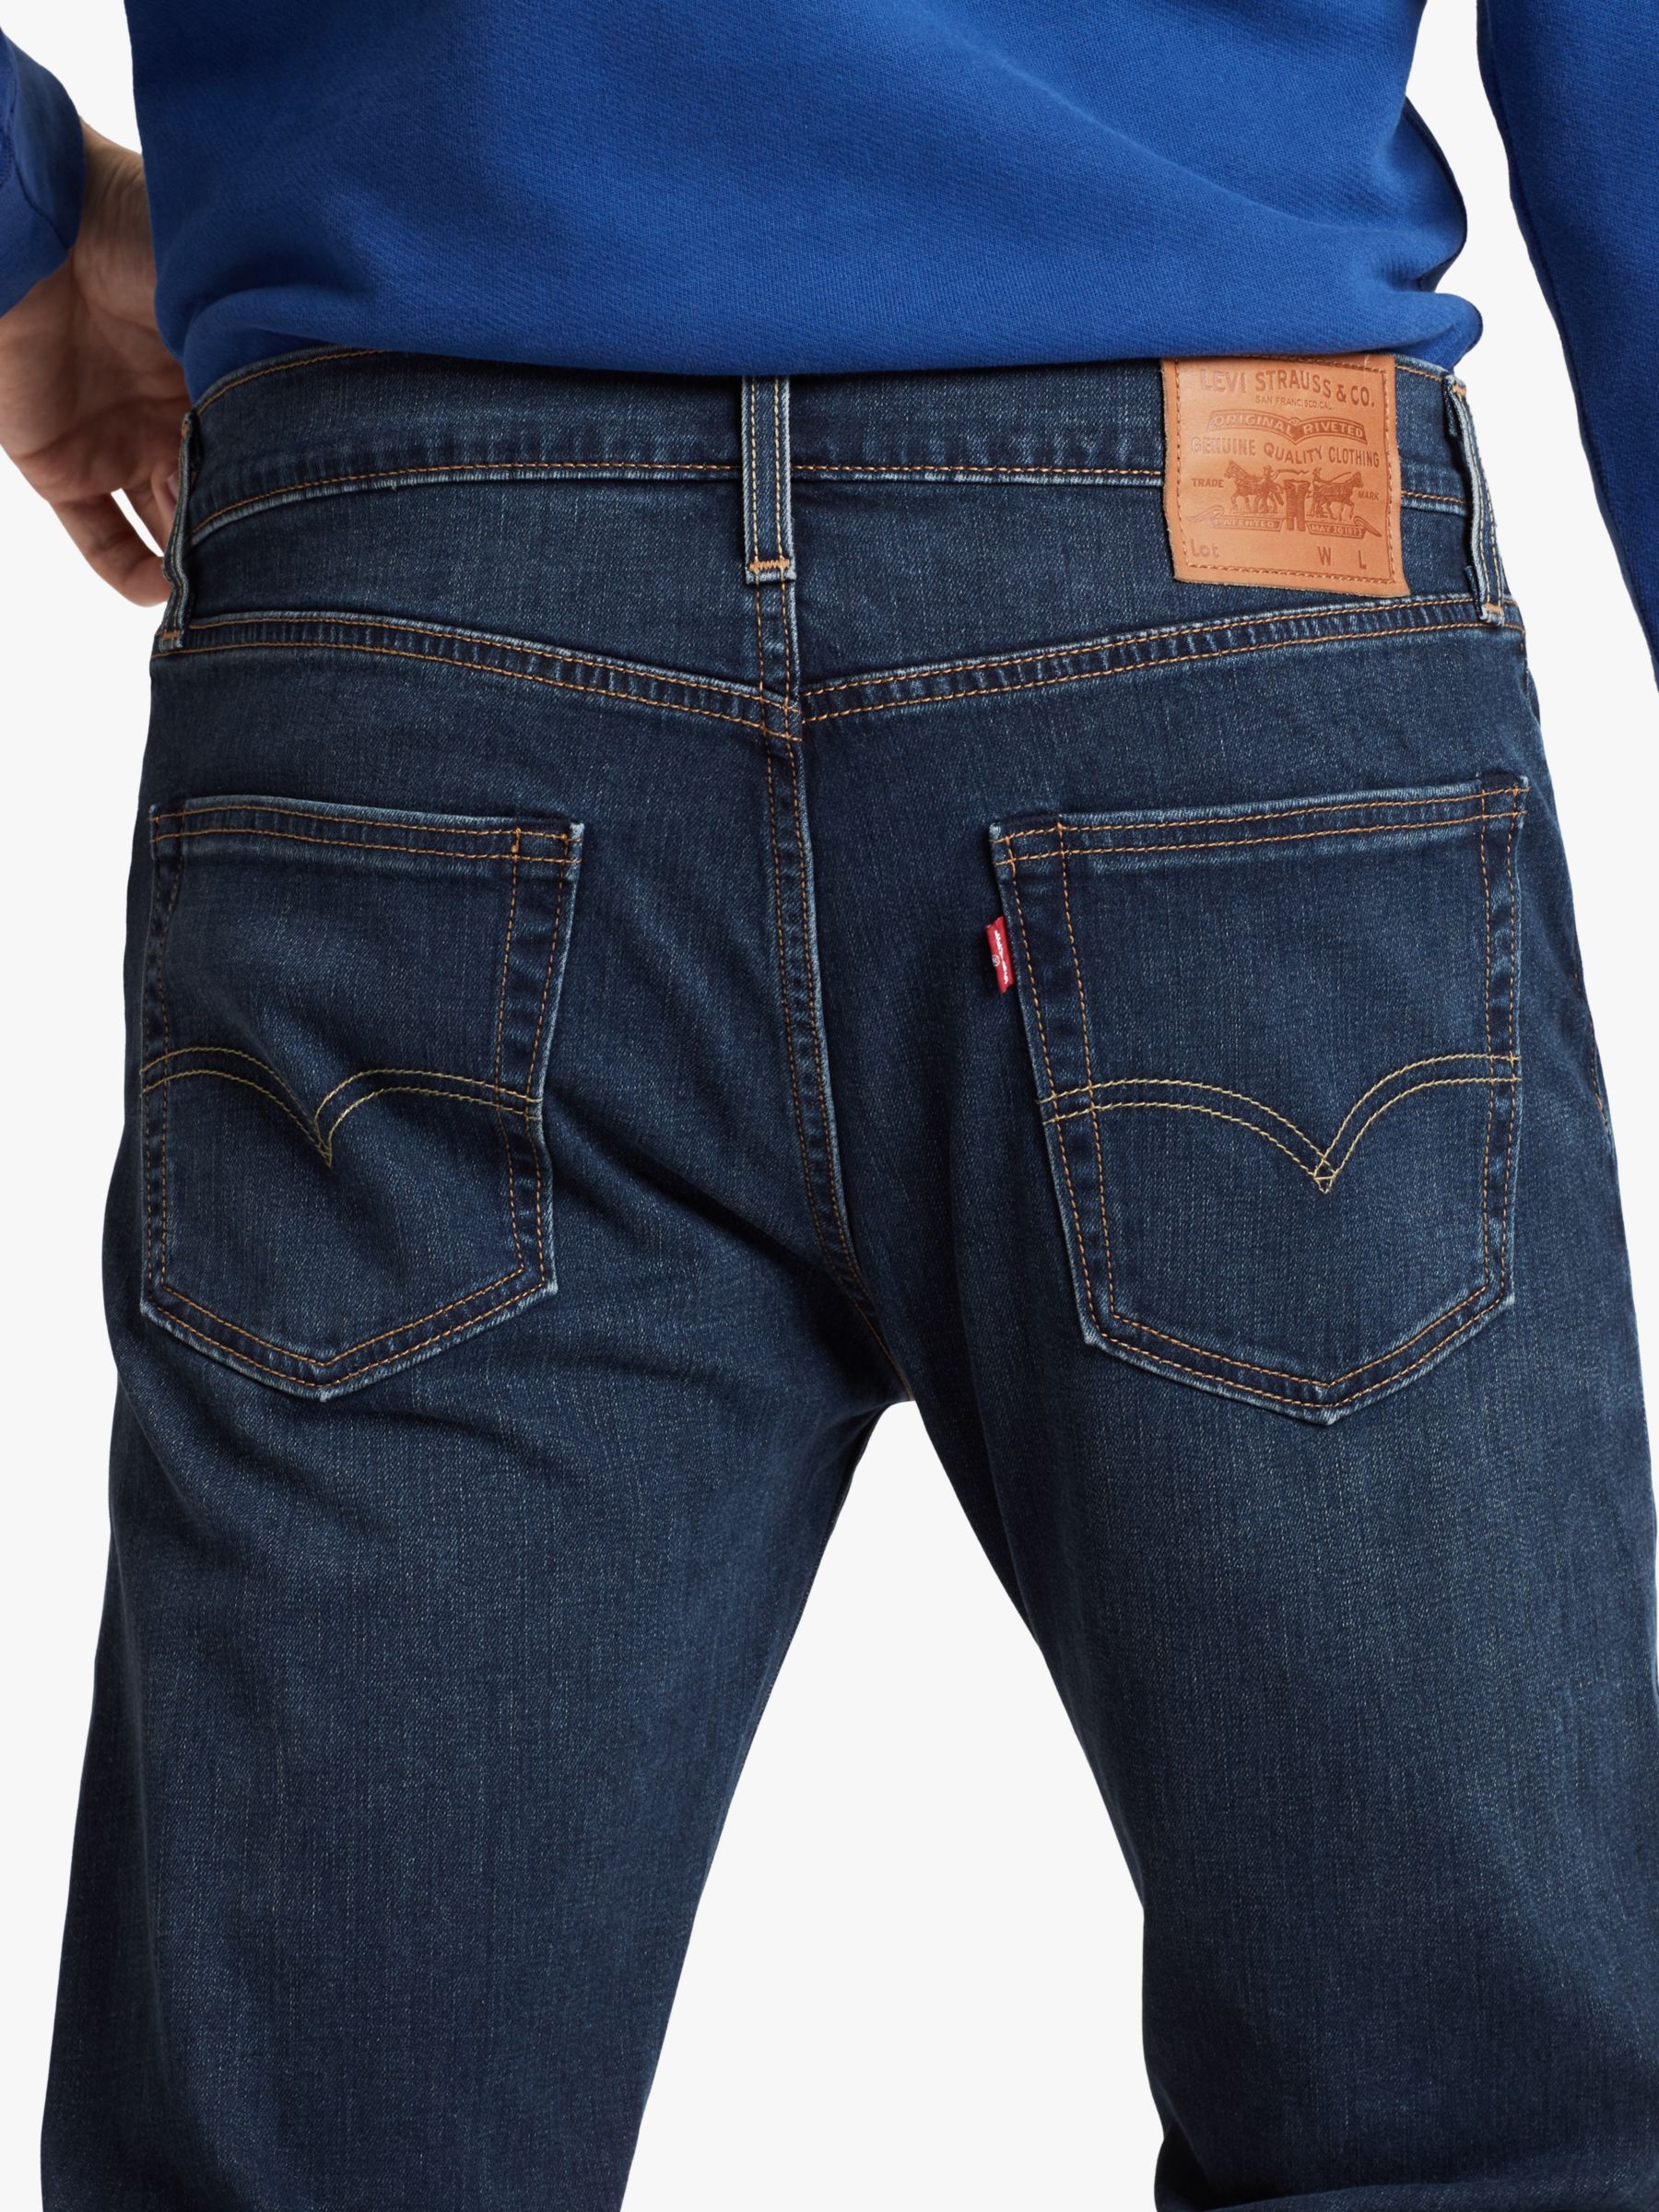 Levi's 502 Regular Tapered Jeans, Adriatic Adapt